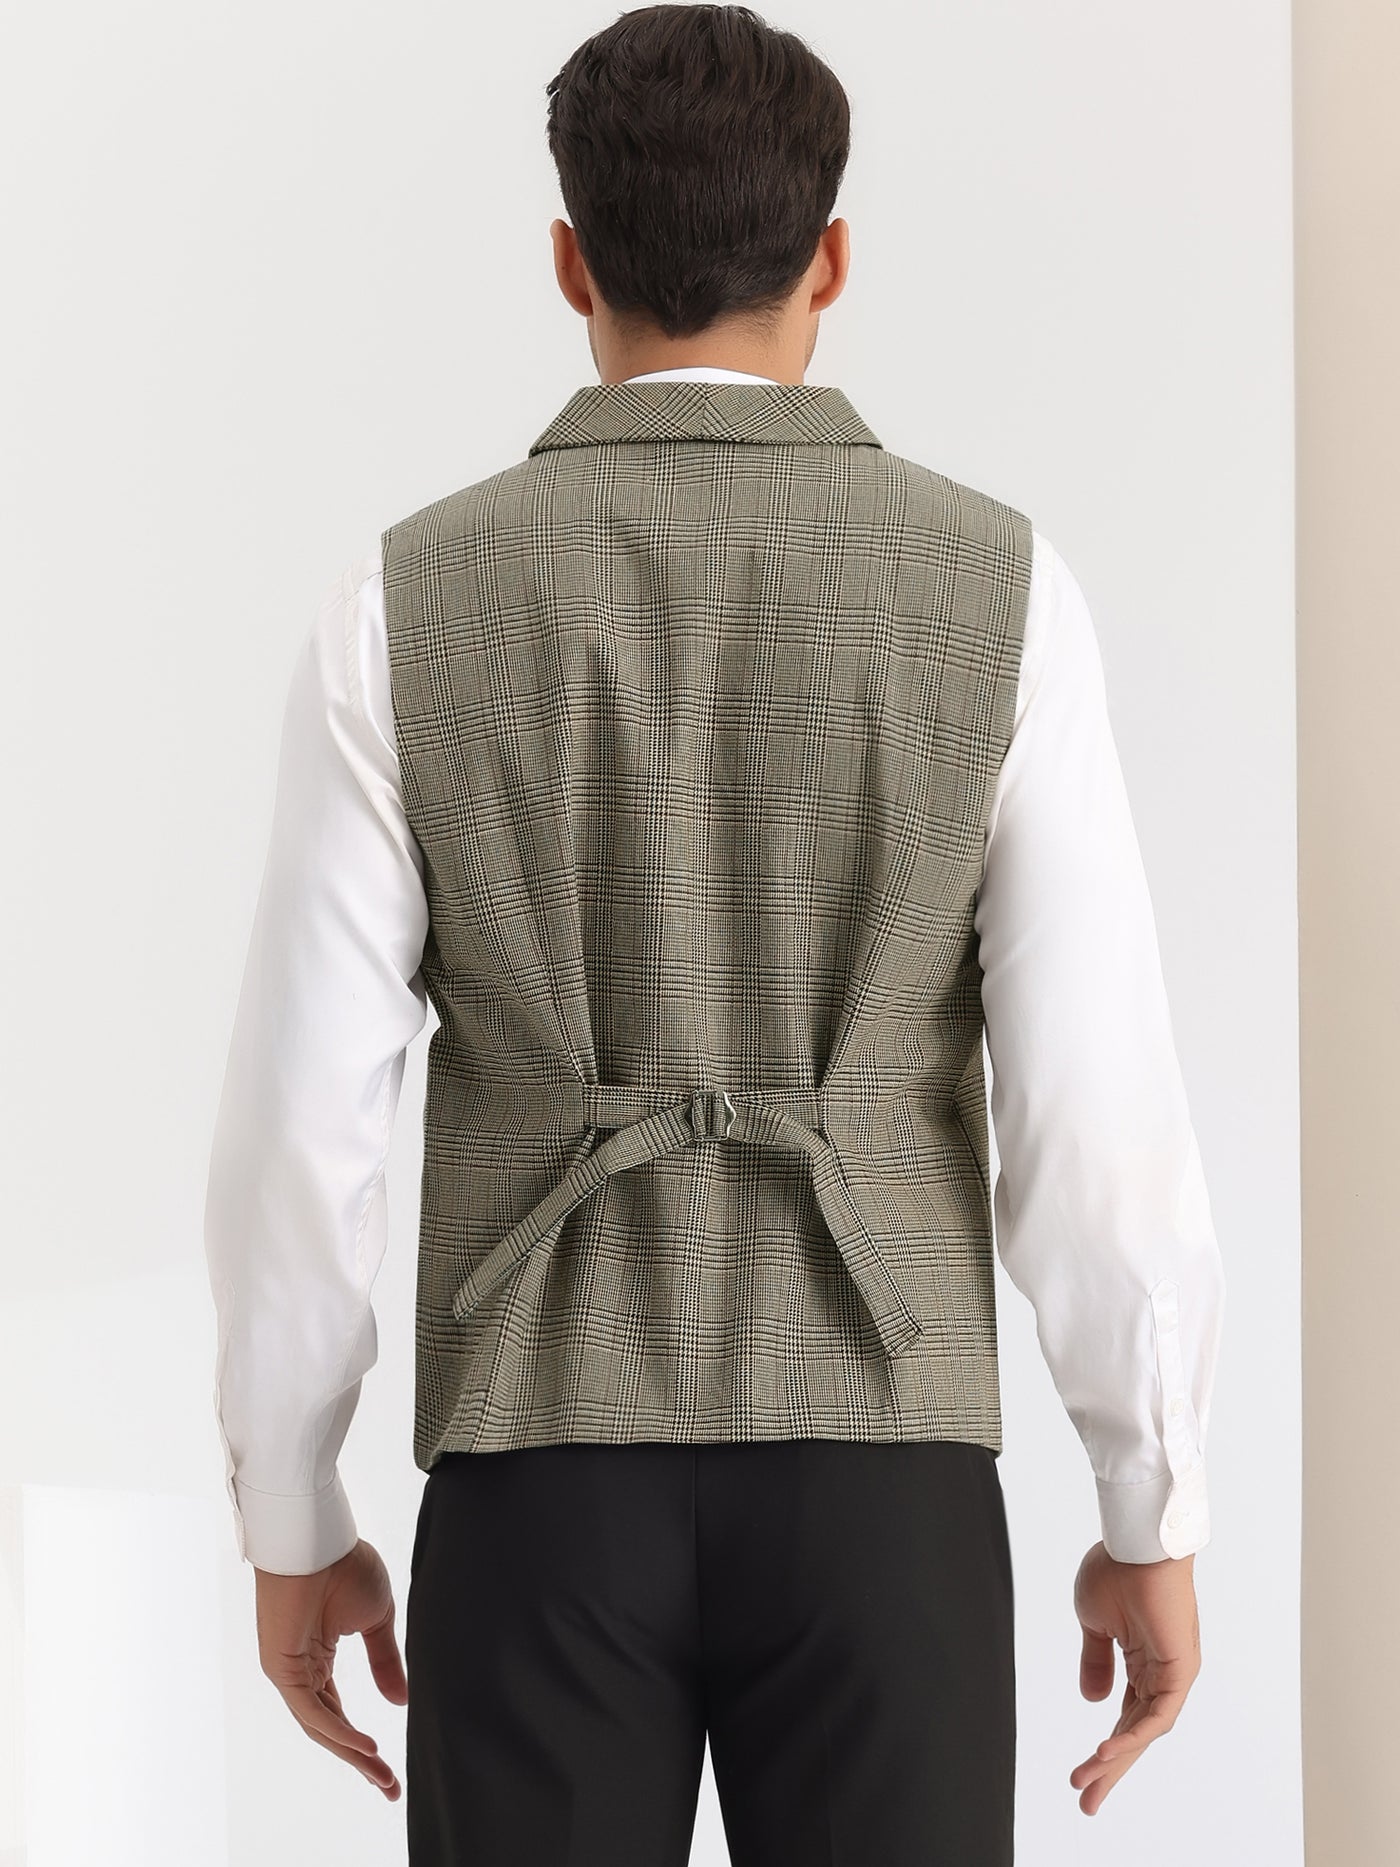 Bublédon Plaid Waistcoat for Men's Slim Fit Shawl Lapel Double Breasted Business Suit Vest